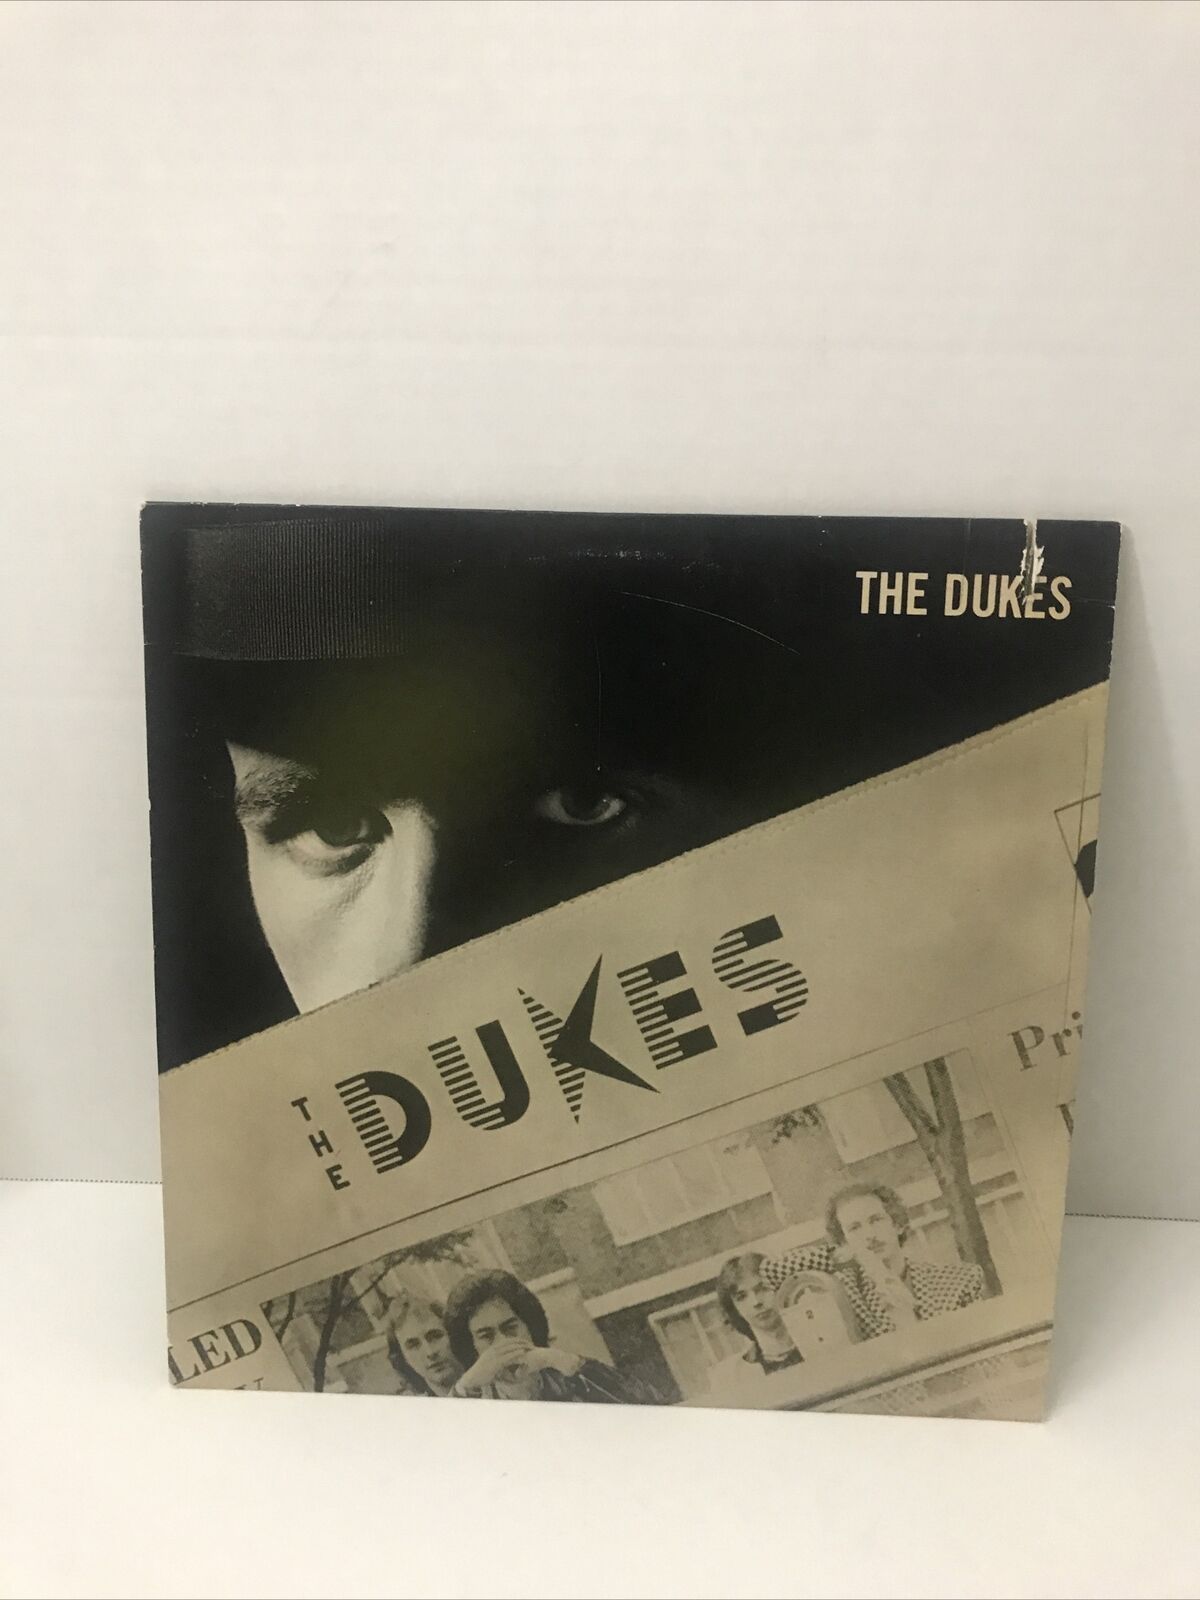 The Dukes - Self Titled Vinyl LP Warner Bros BSK 3376 VG+